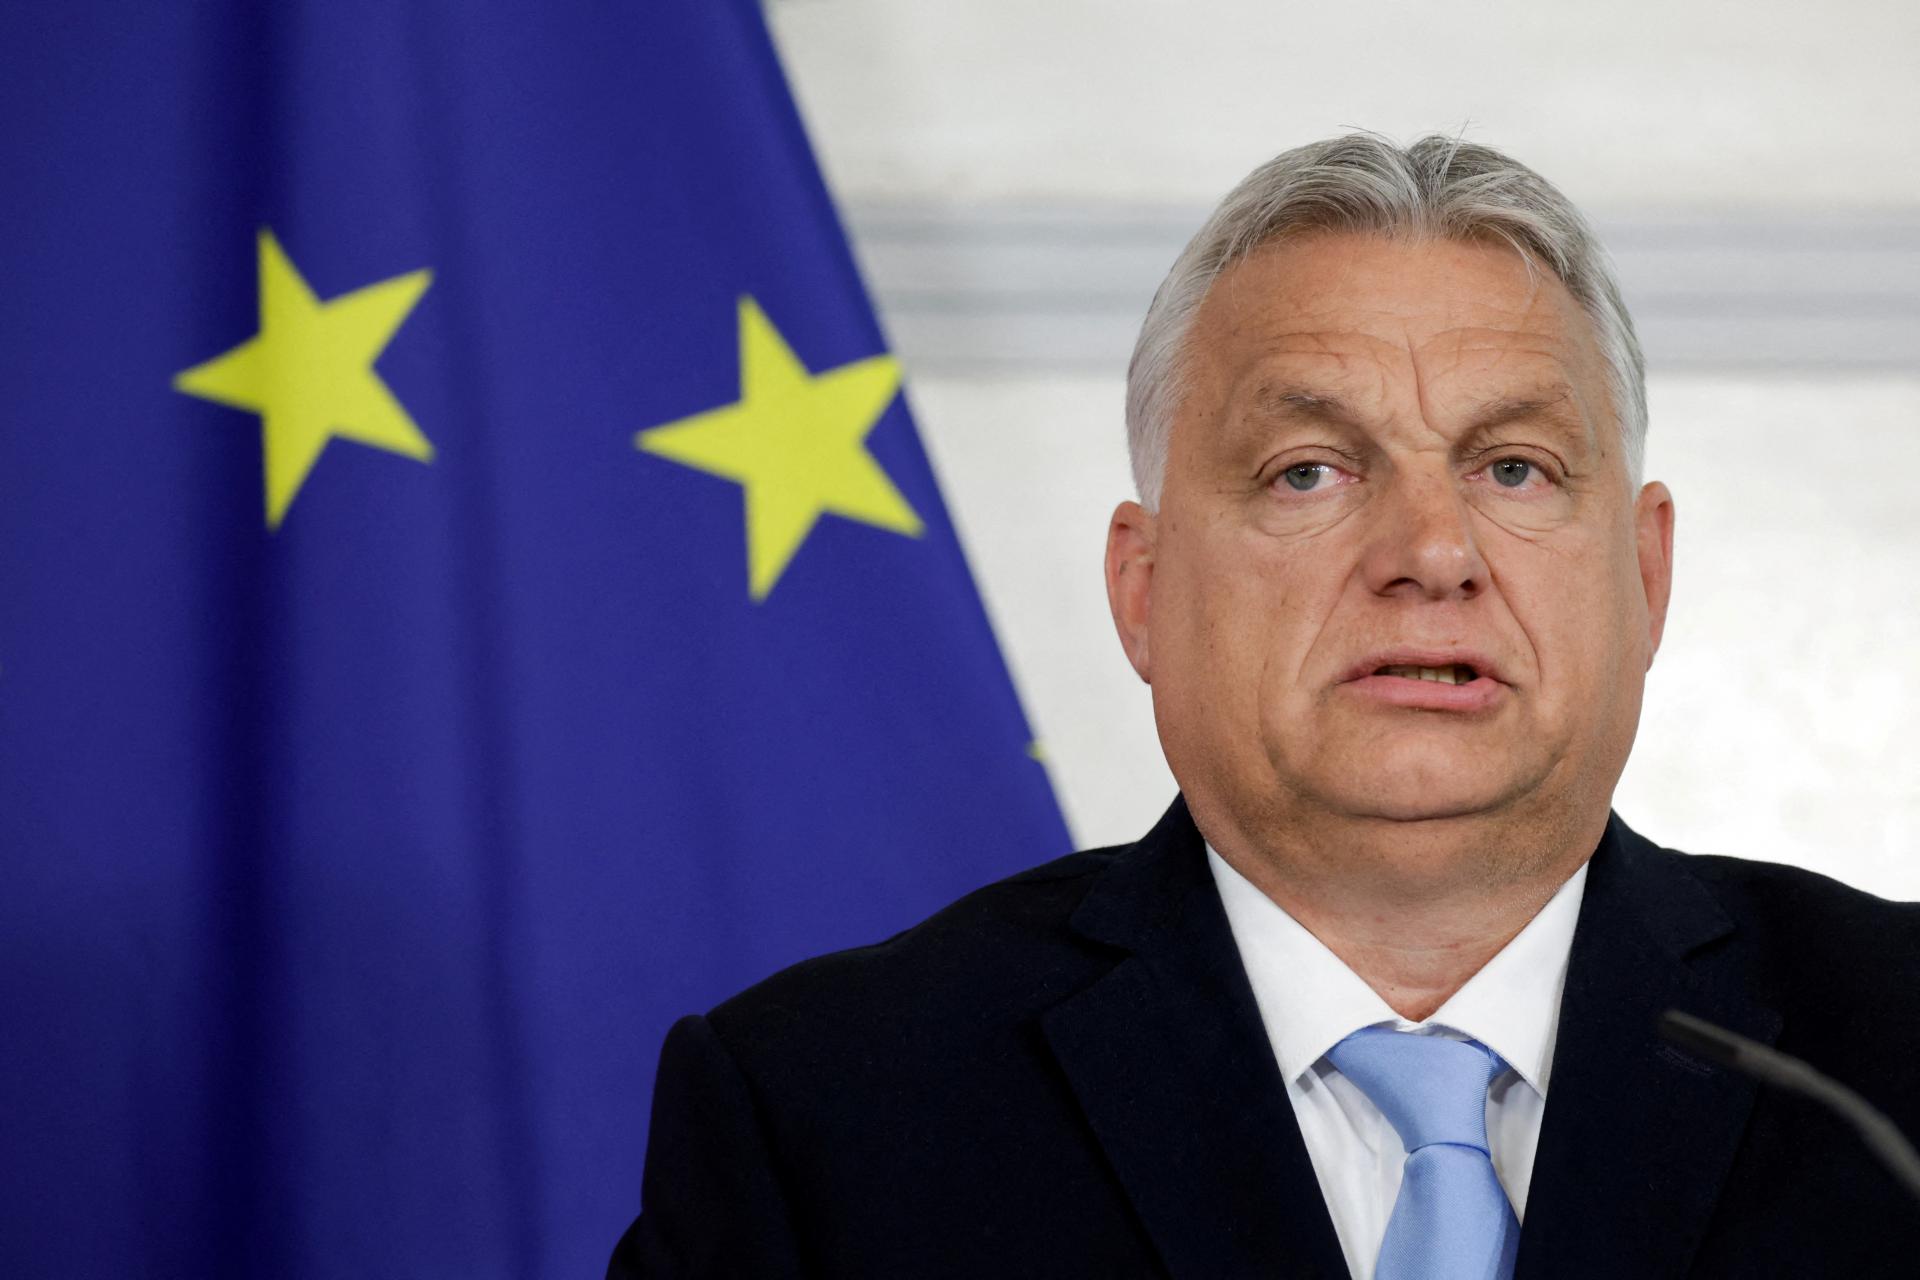 Pokuta súdneho dvora EÚ pre Maďarsko je podľa Orbána neslýchaná a neprijateľná